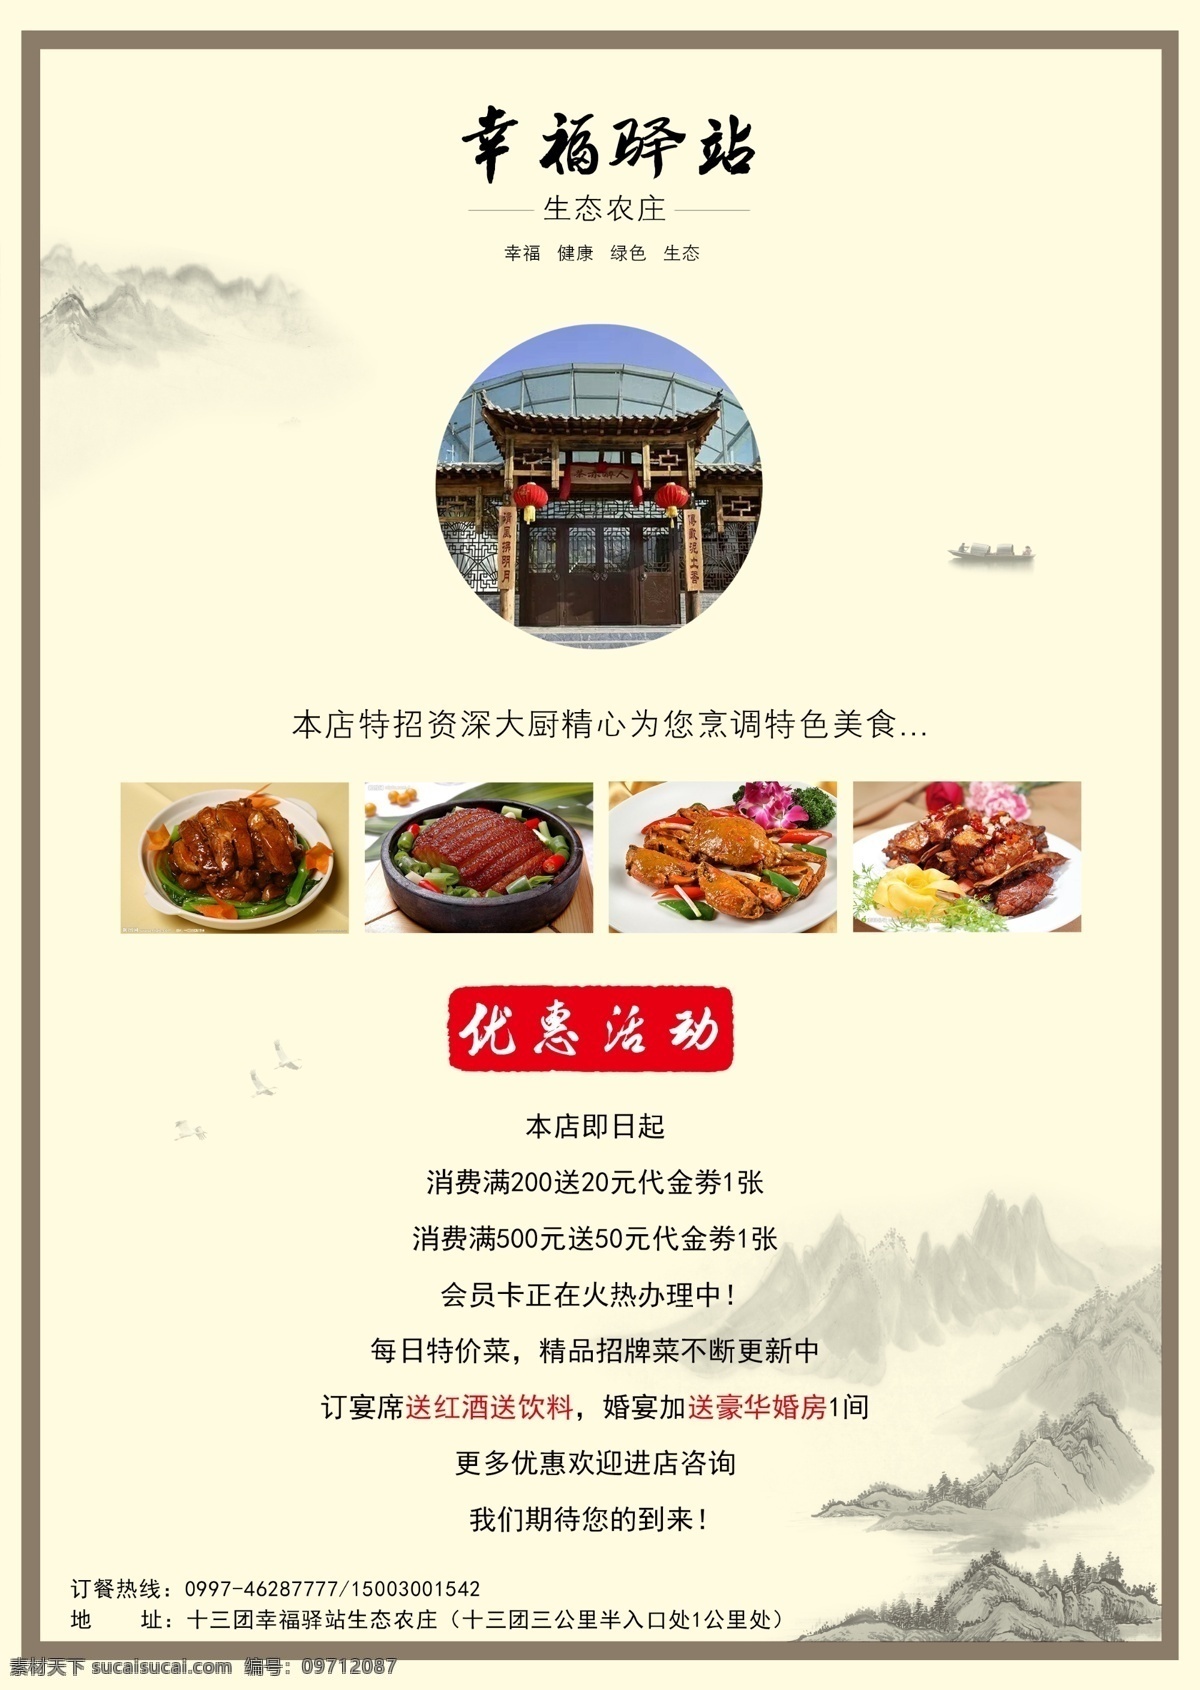 幸福 驿站 宣传单 正面 水墨 古风 饭店 餐厅 宣传 分层 艺术 山水素材